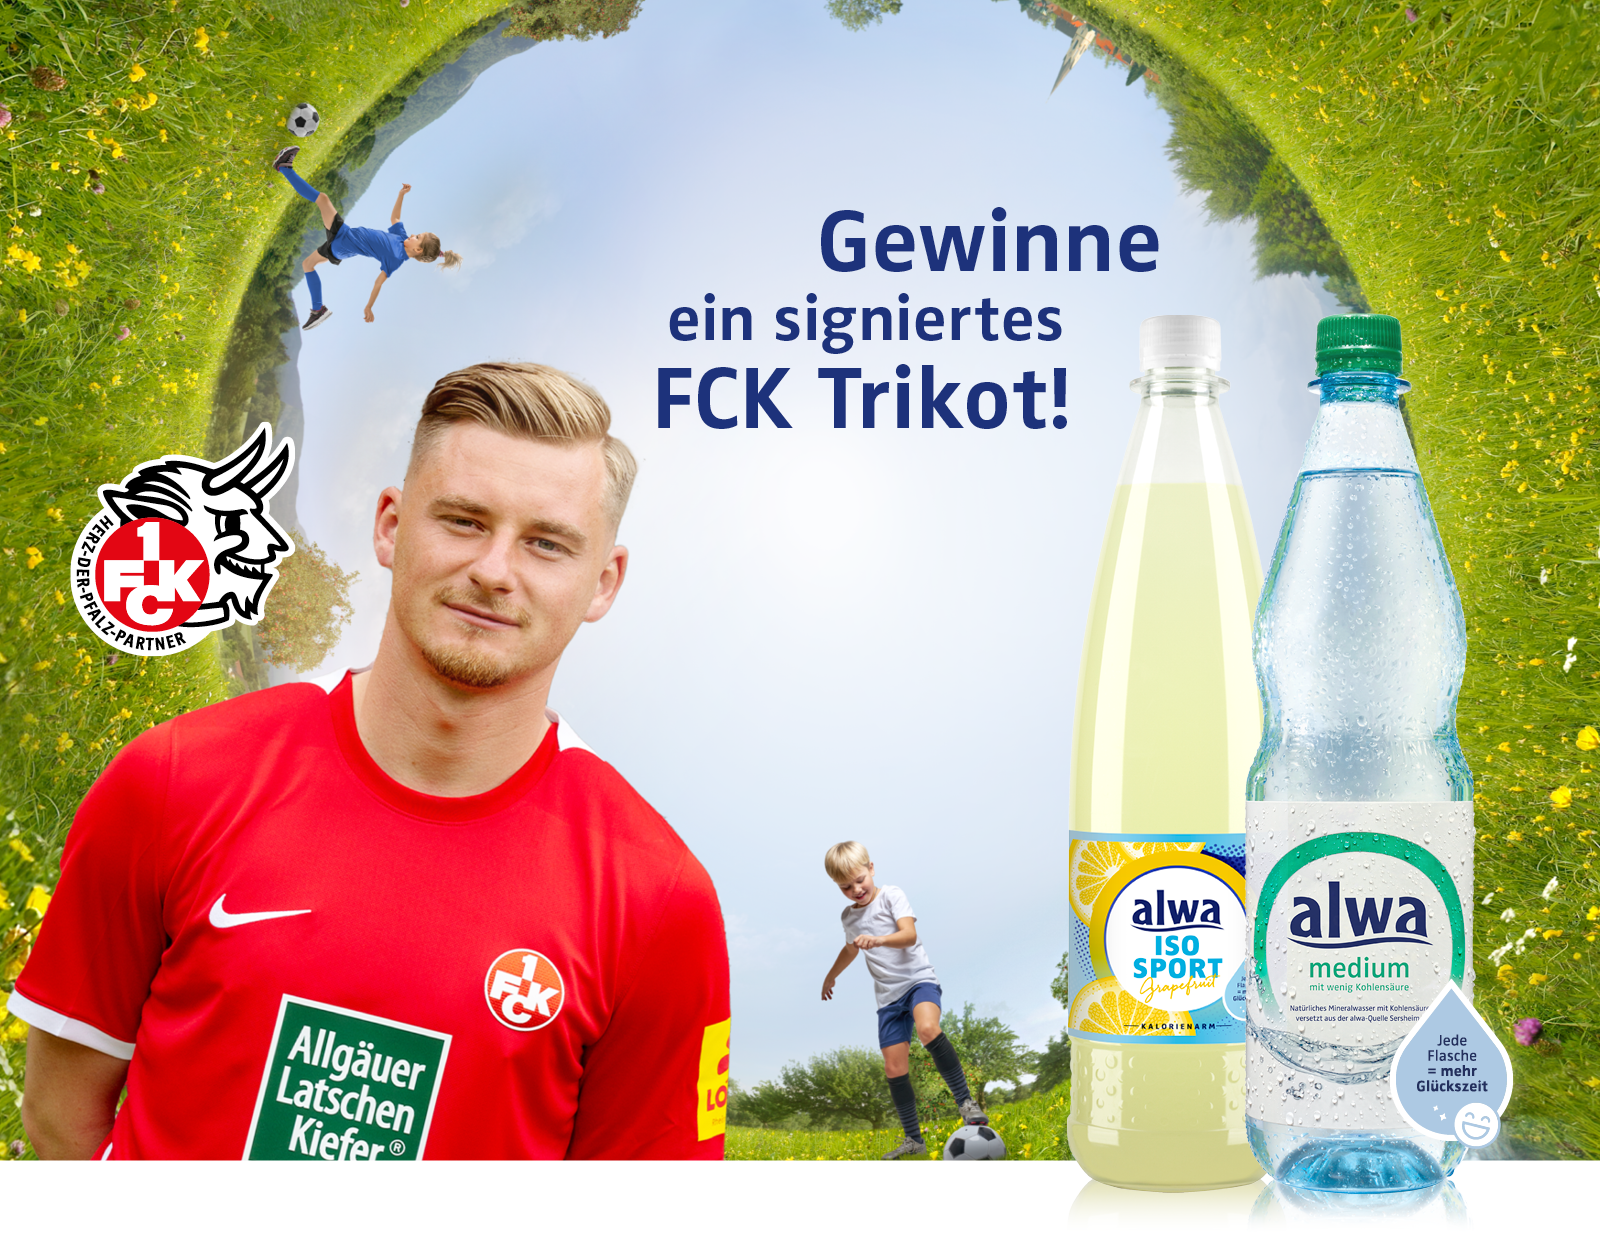 Gewinne ein signiertes FCK Trikot!